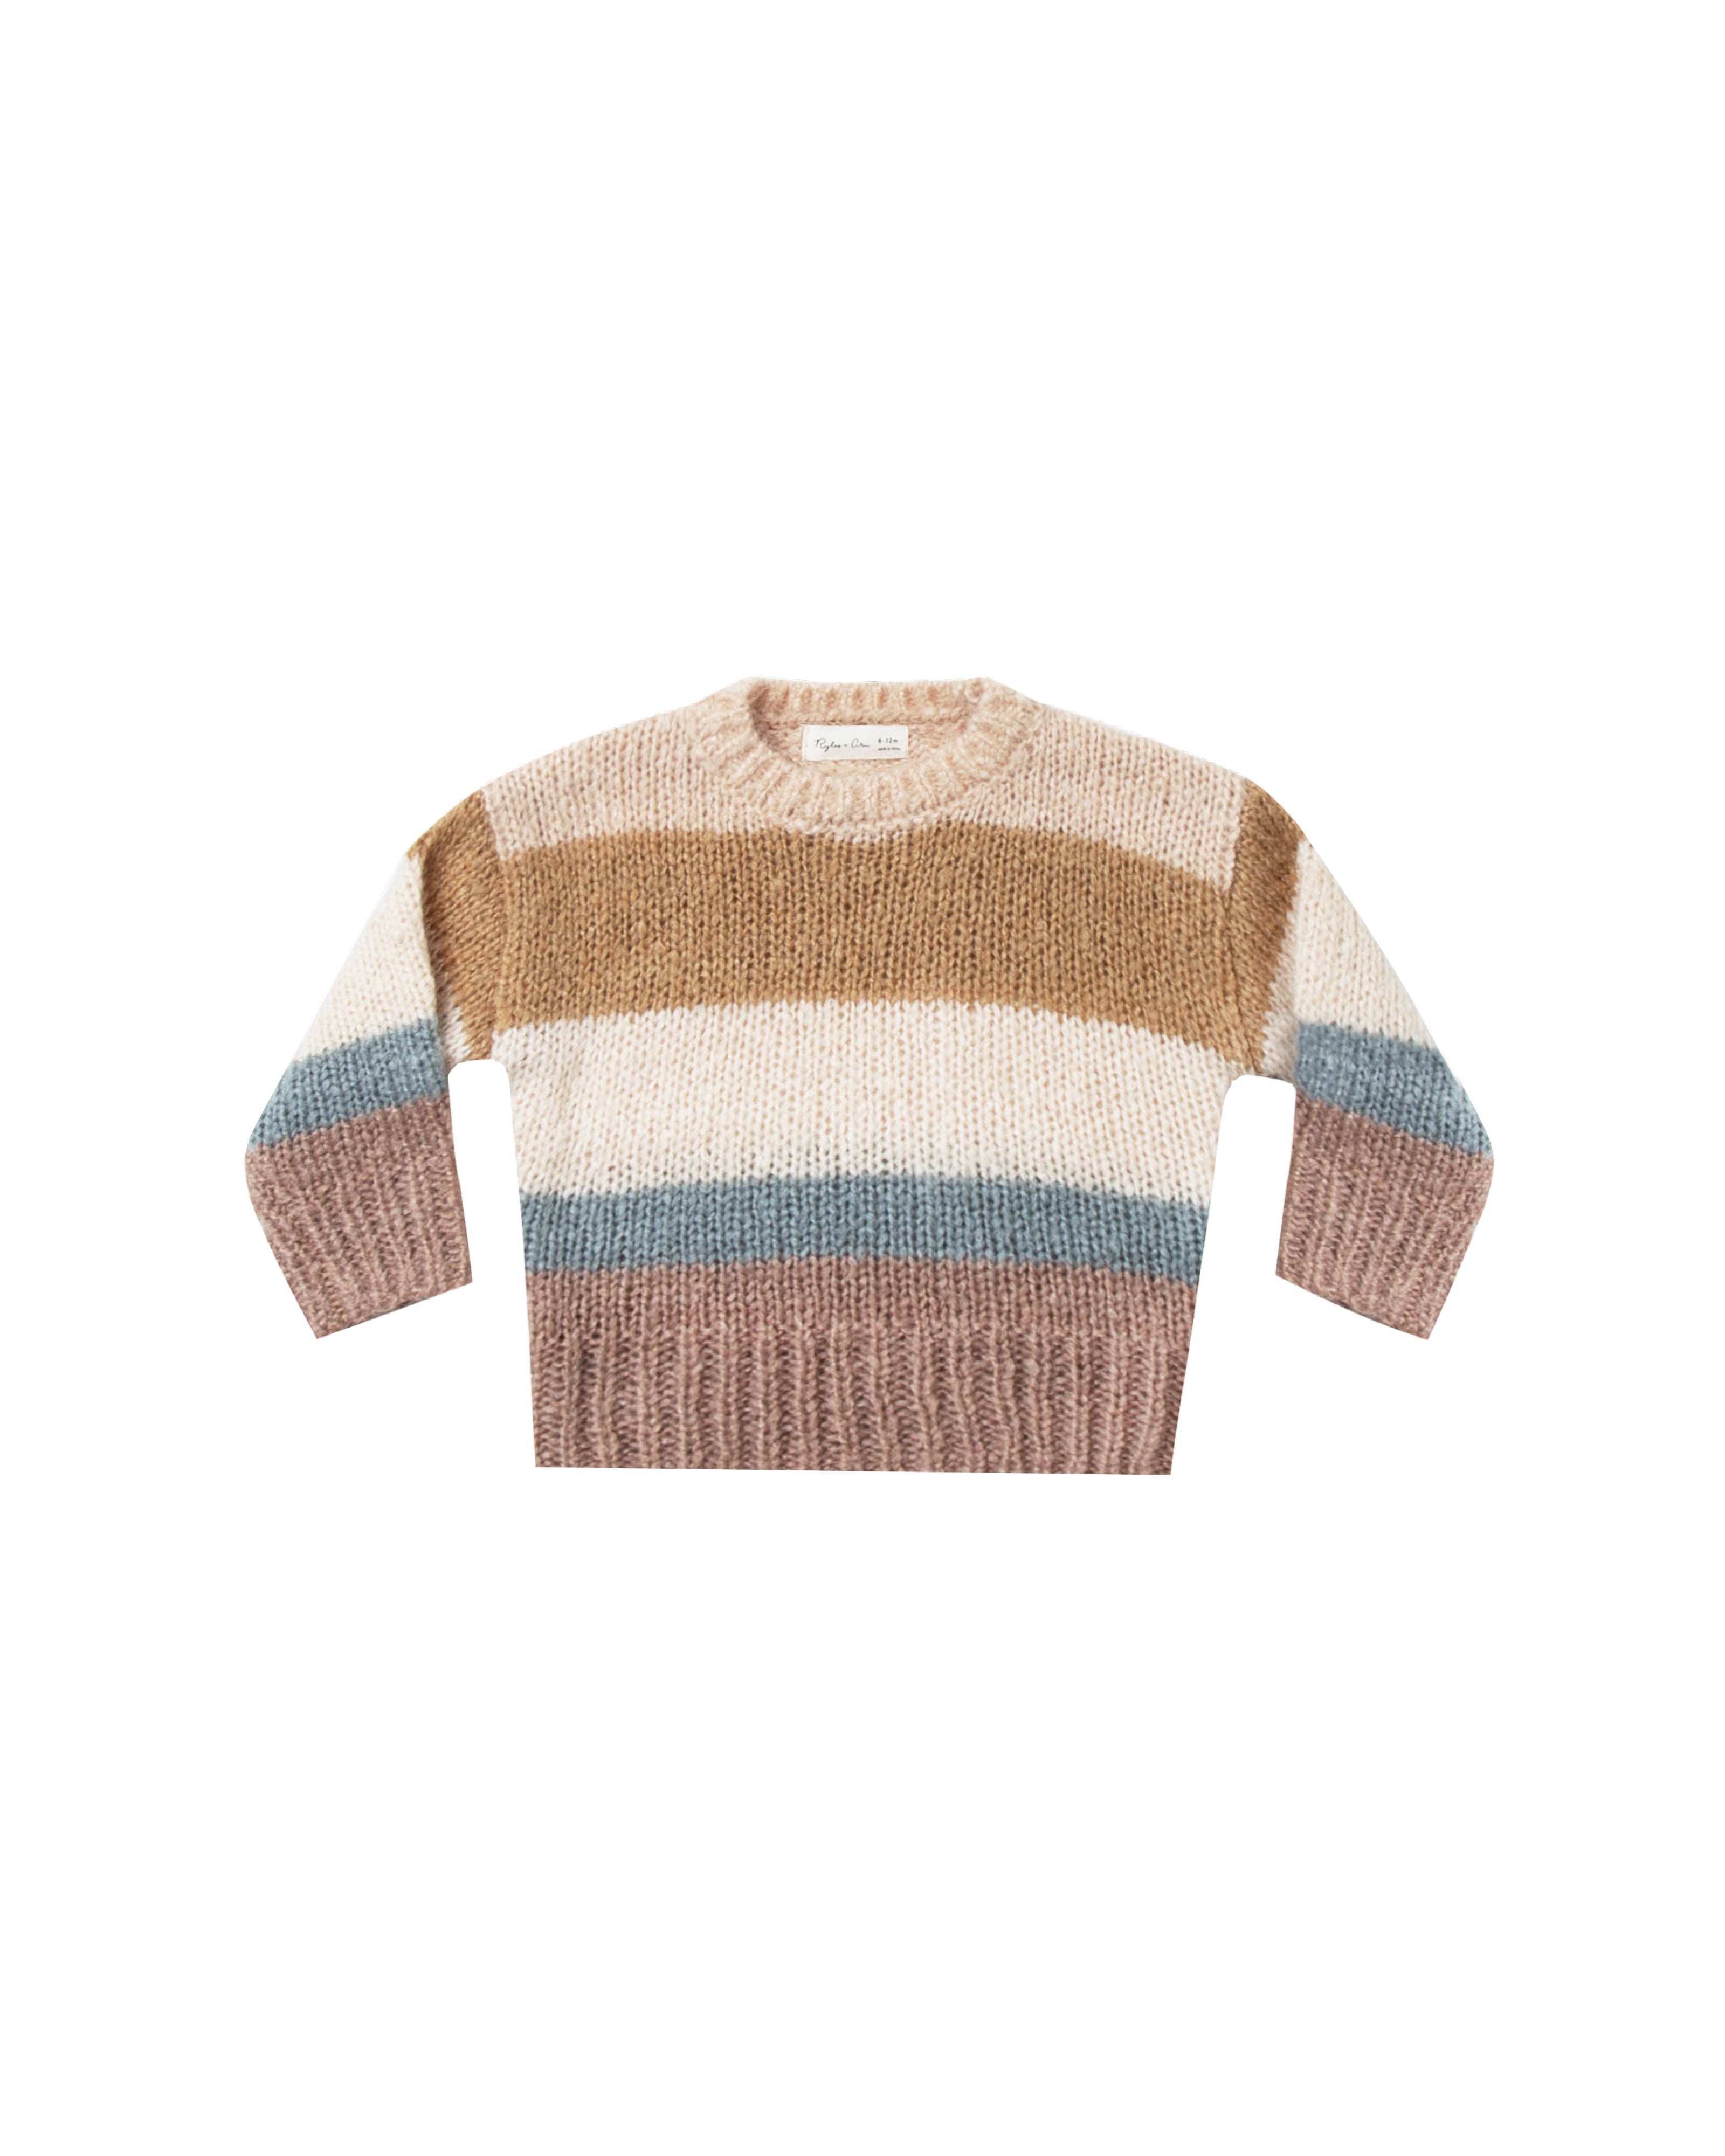 Aspen Sweater in Multi Stripe by Rylee + Cru